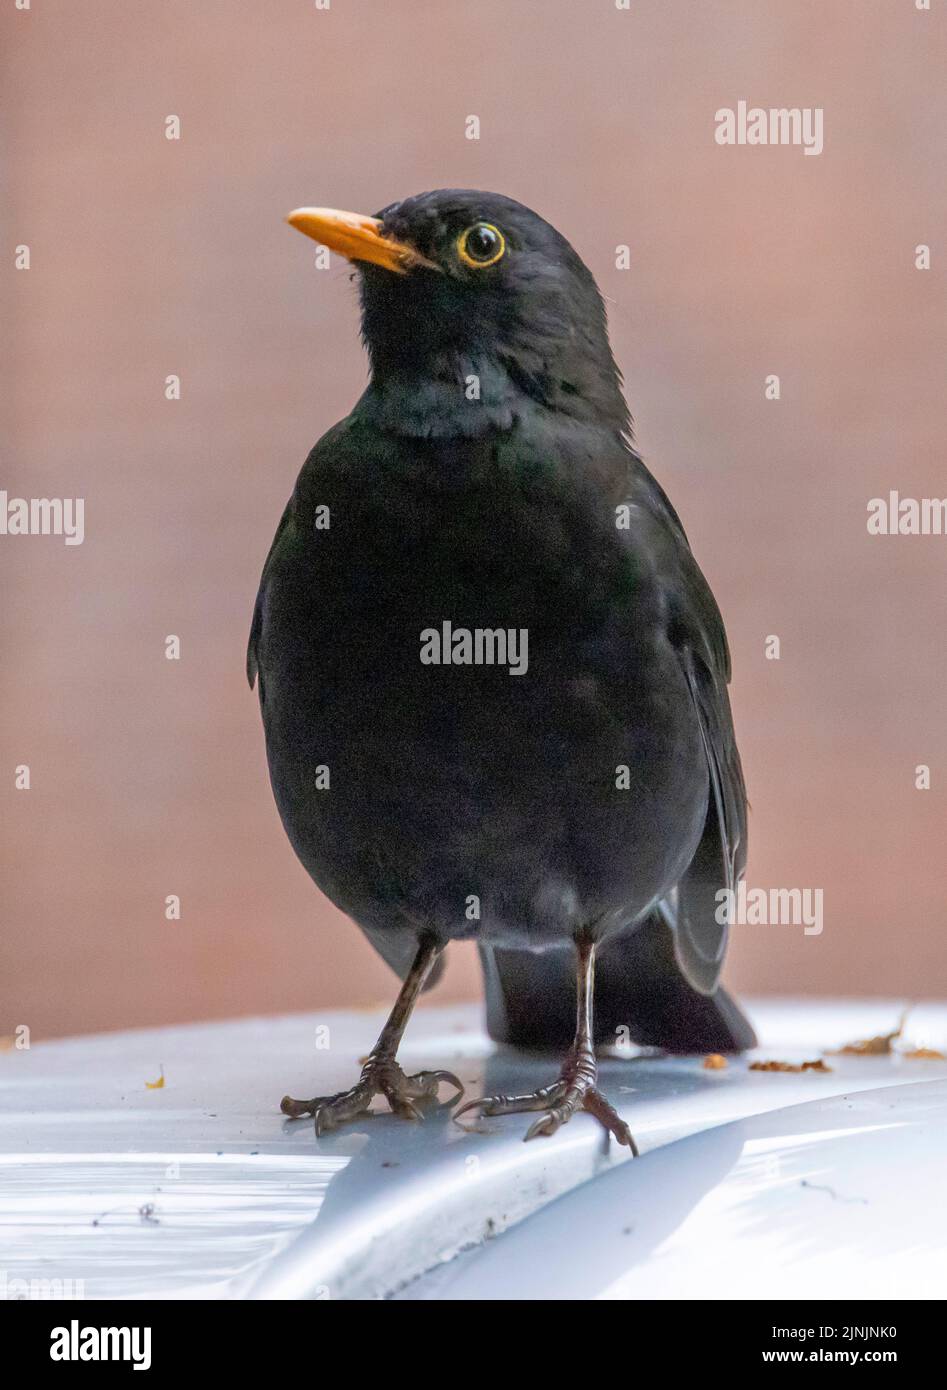 blackbird (Turdus merula), homme sur le dessus de voiture, Allemagne Banque D'Images